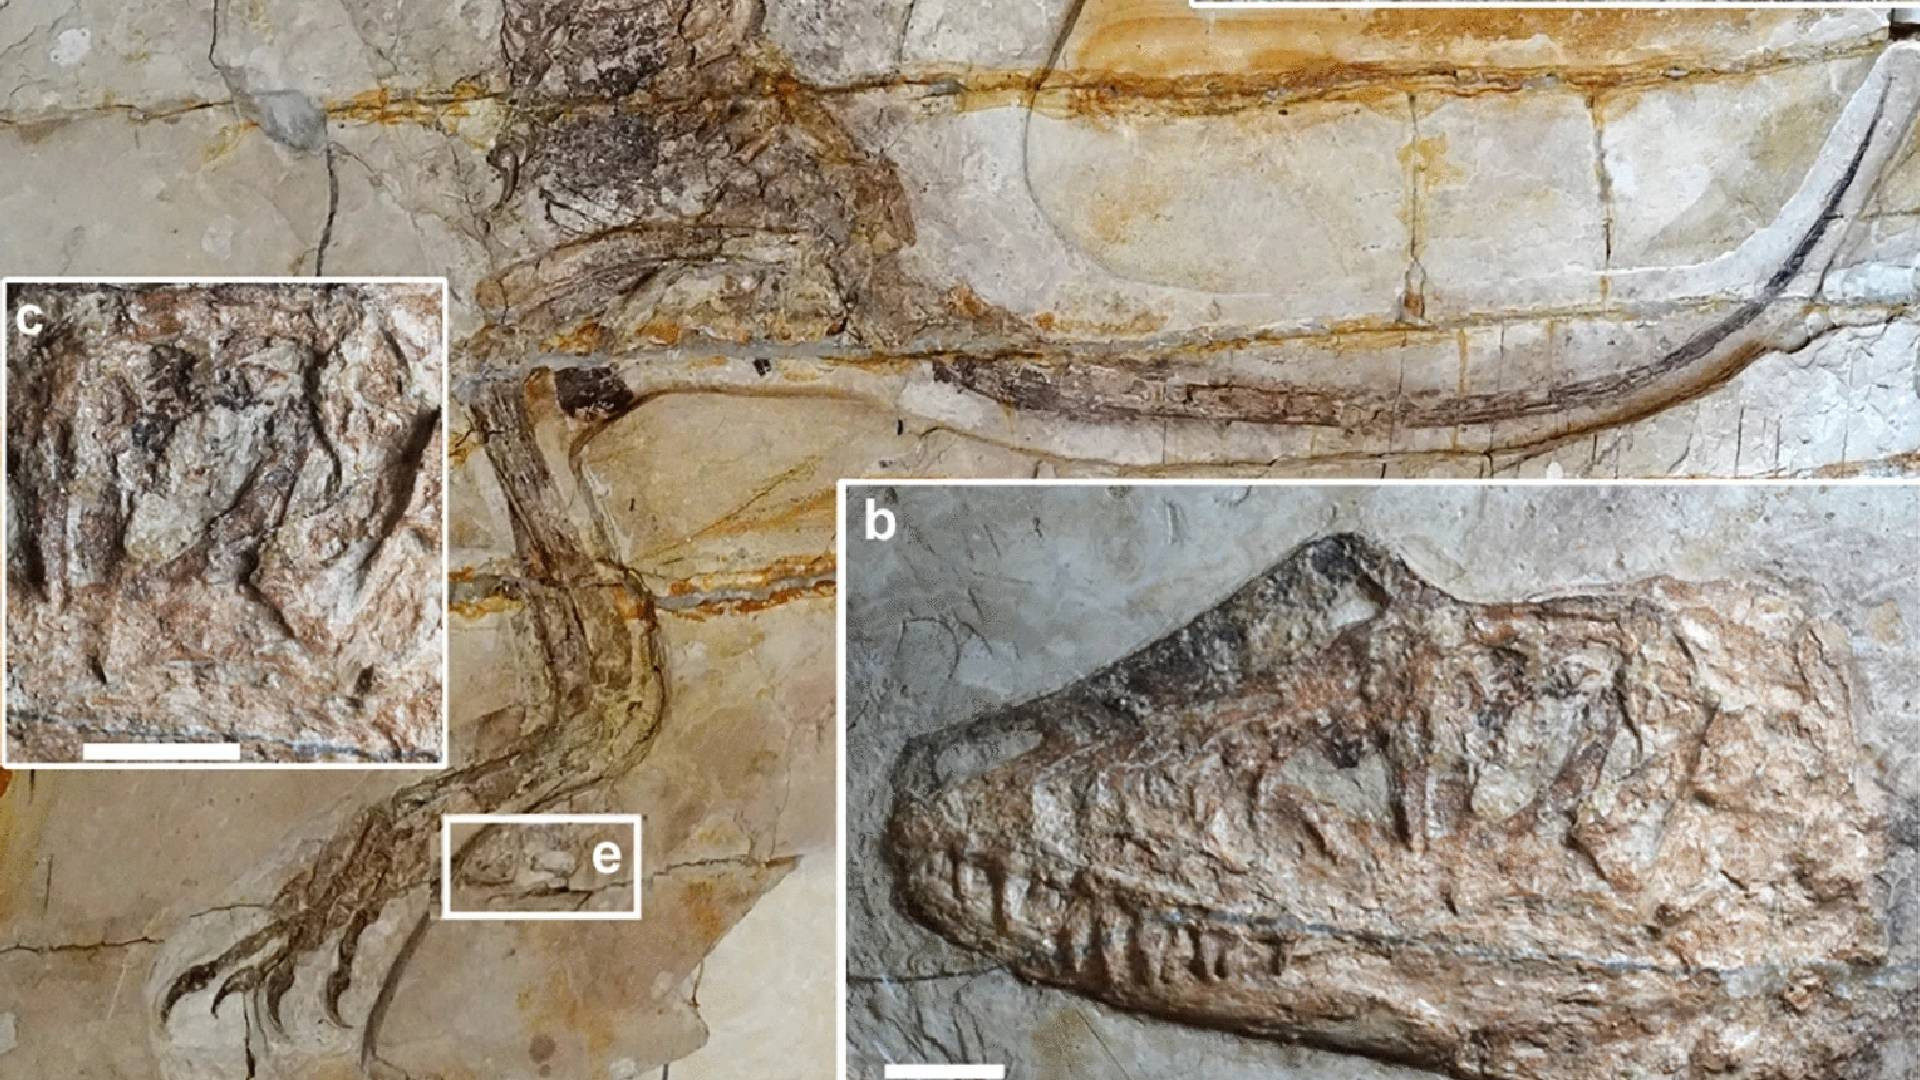 فسیل یک دایناسور با قورباغه در روده اش.